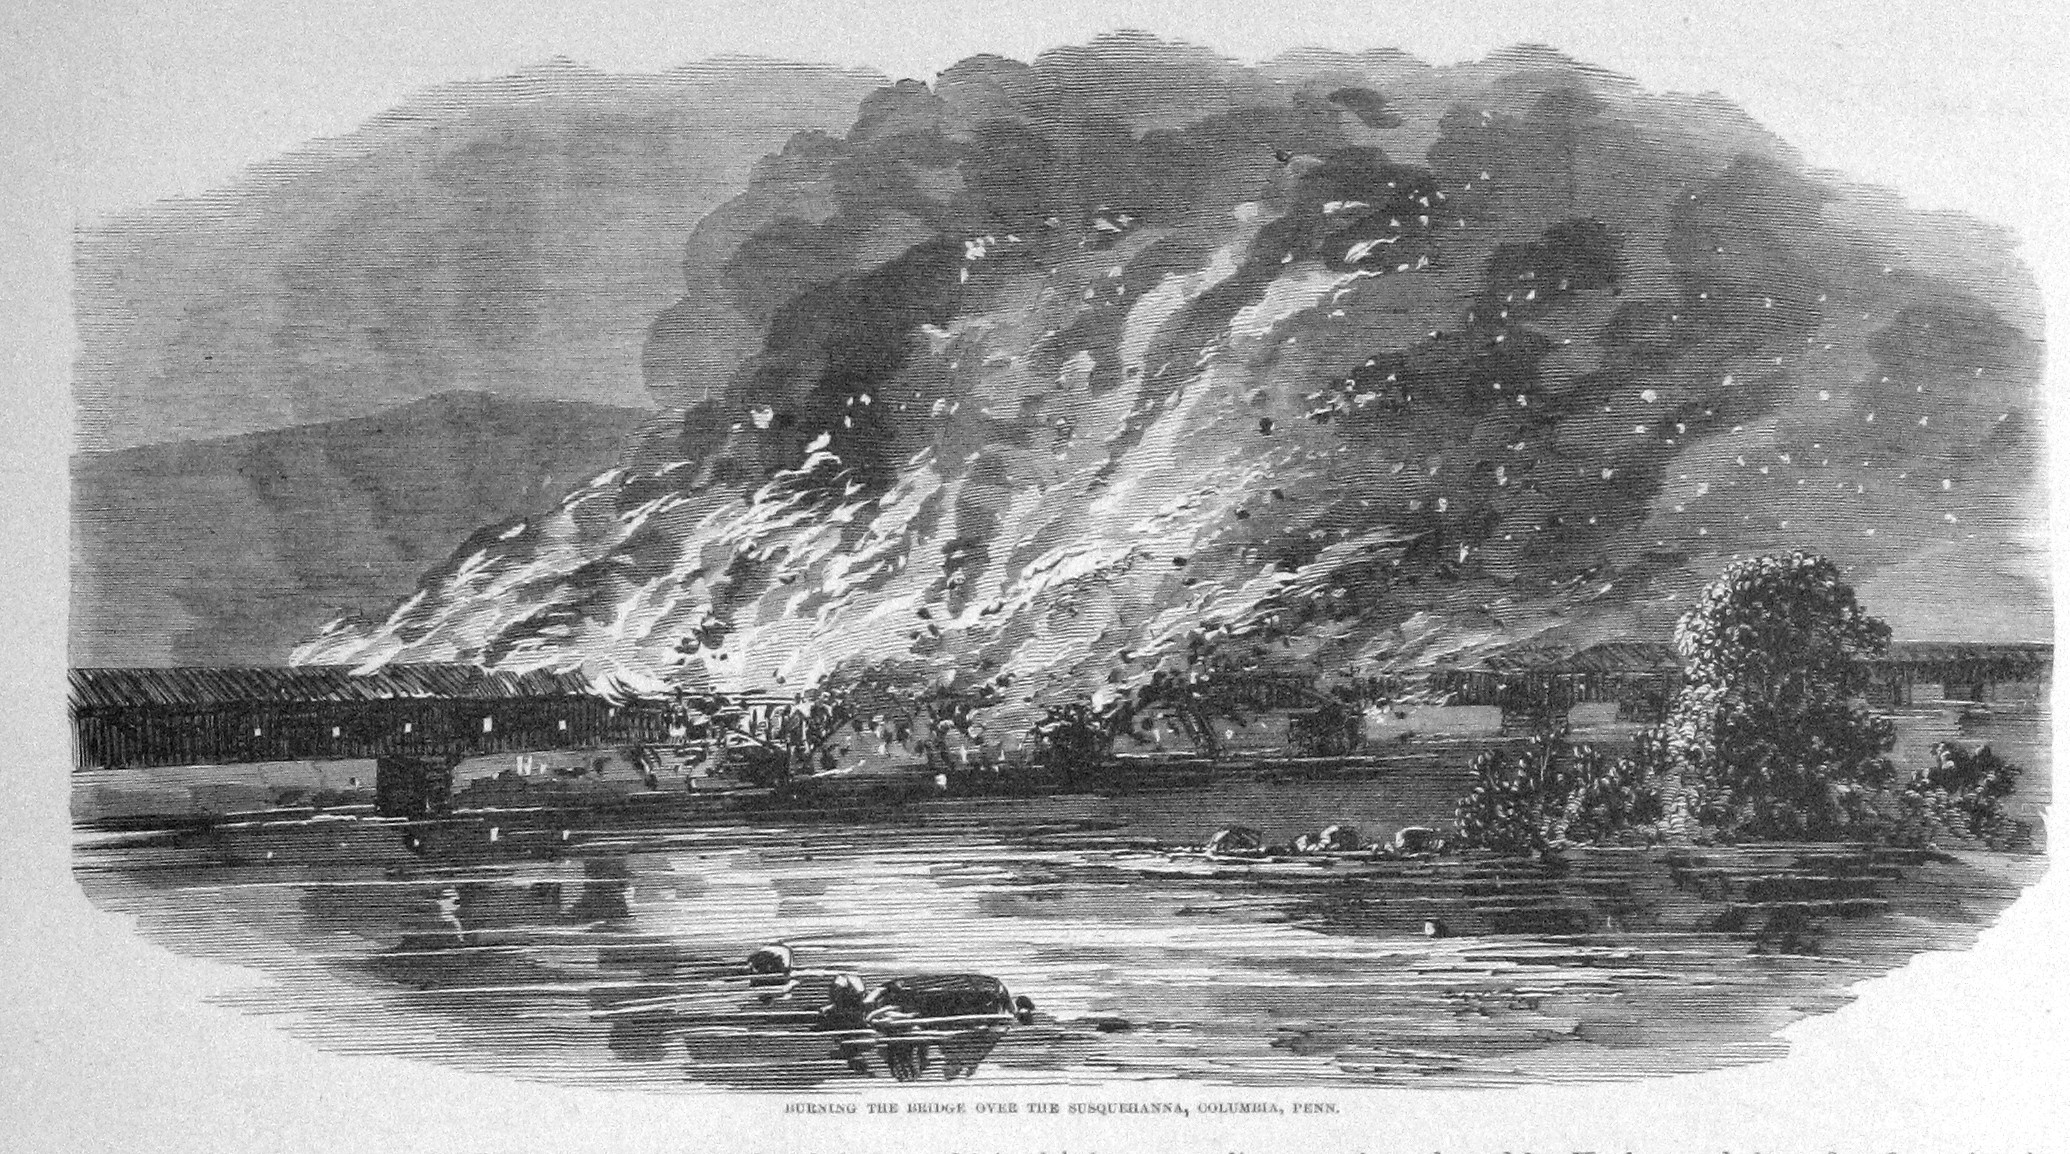 susquehanna bridge burning columbia pennsylvania